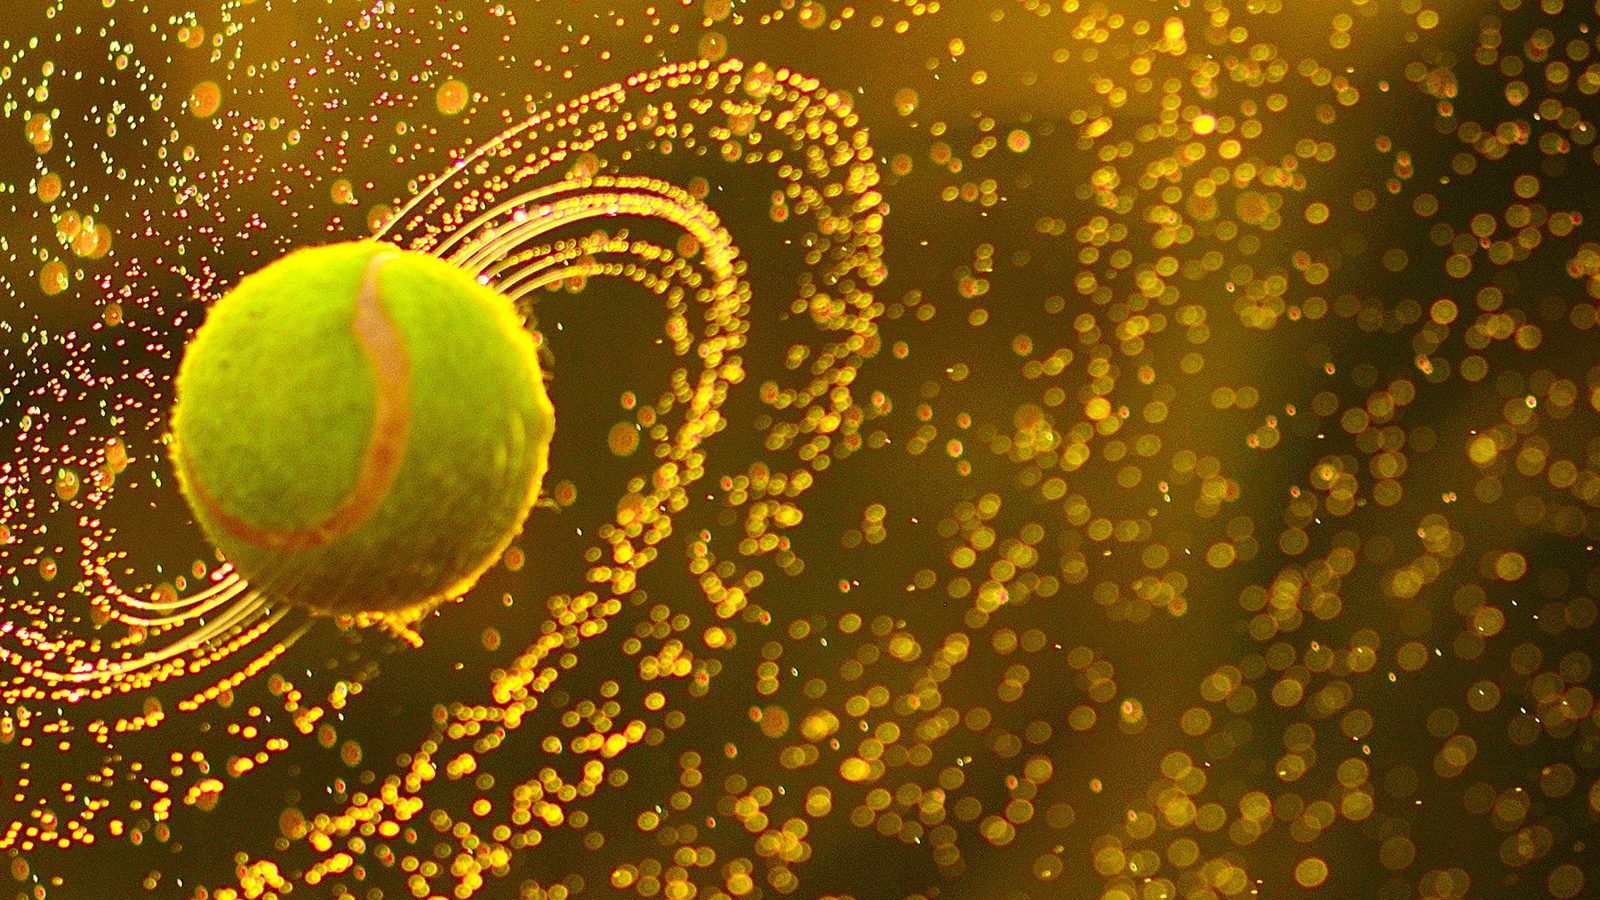 Tennis Ball 3d Champion 2013 Hd Desktop Wallpaper Mr Sport Afalchi Free images wallpape [afalchi.blogspot.com]